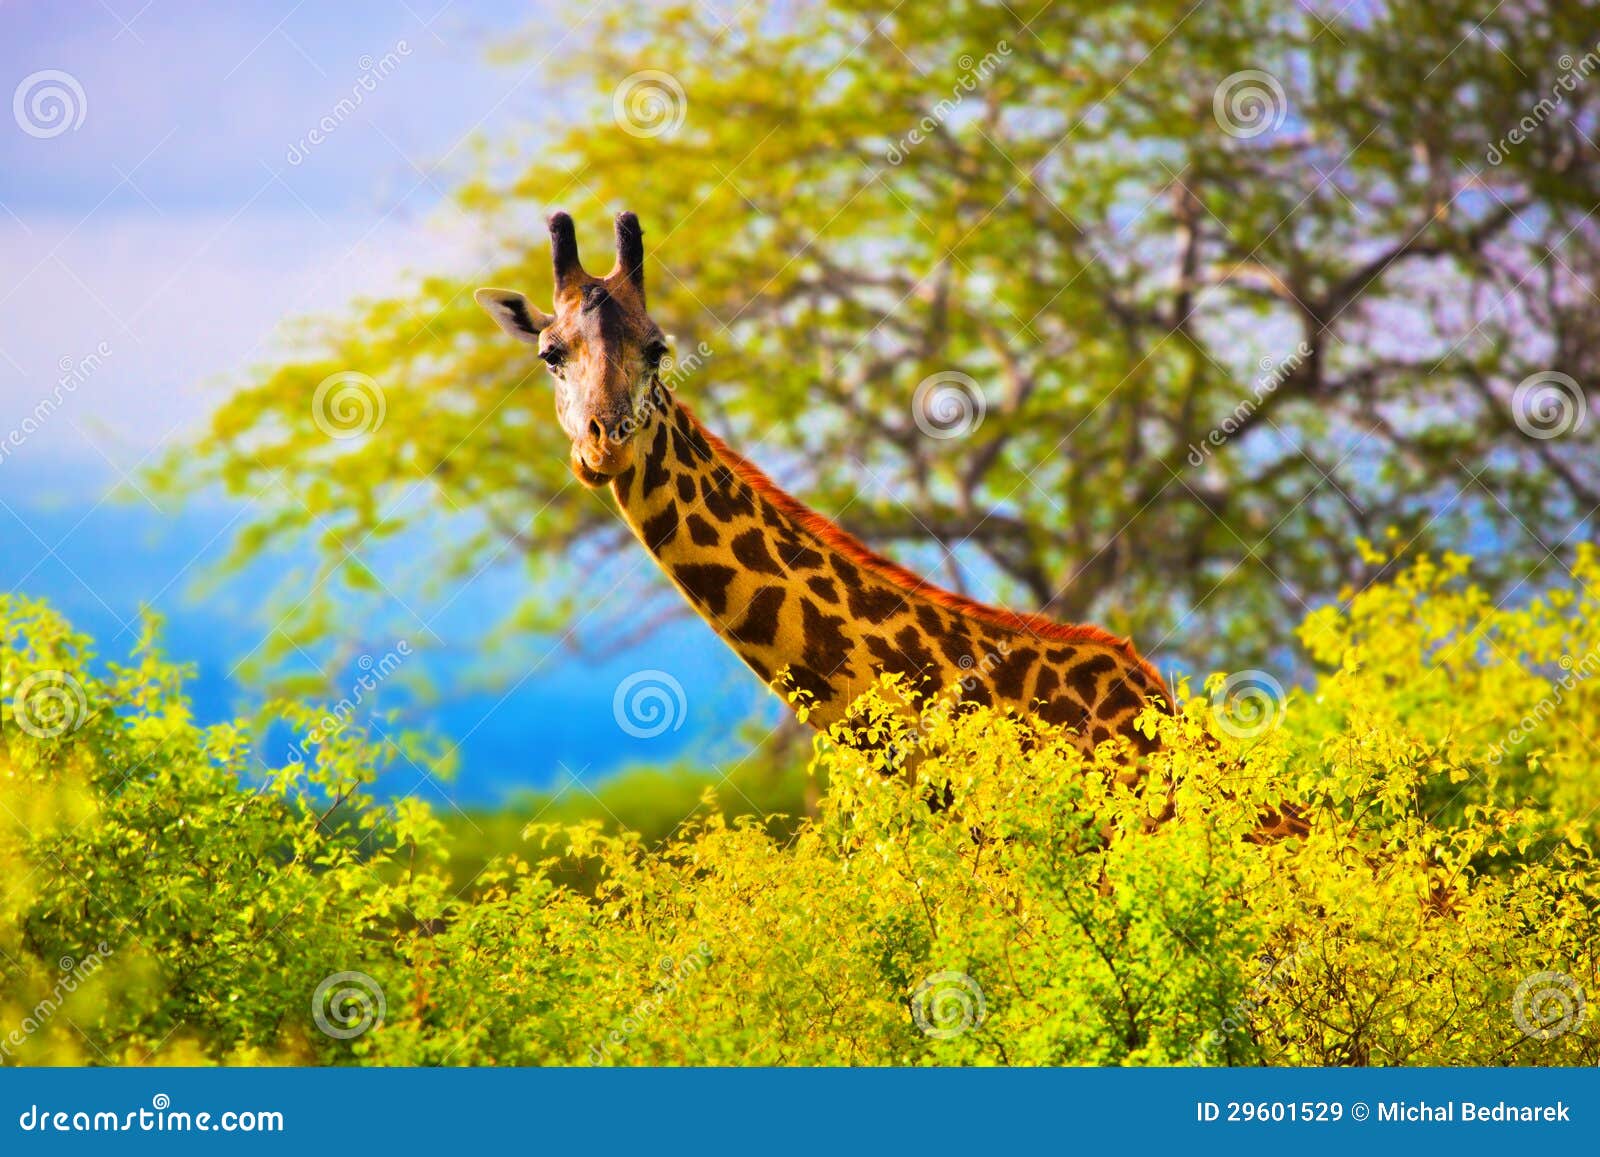 giraffe in bush. safari in tsavo west, kenya, africa